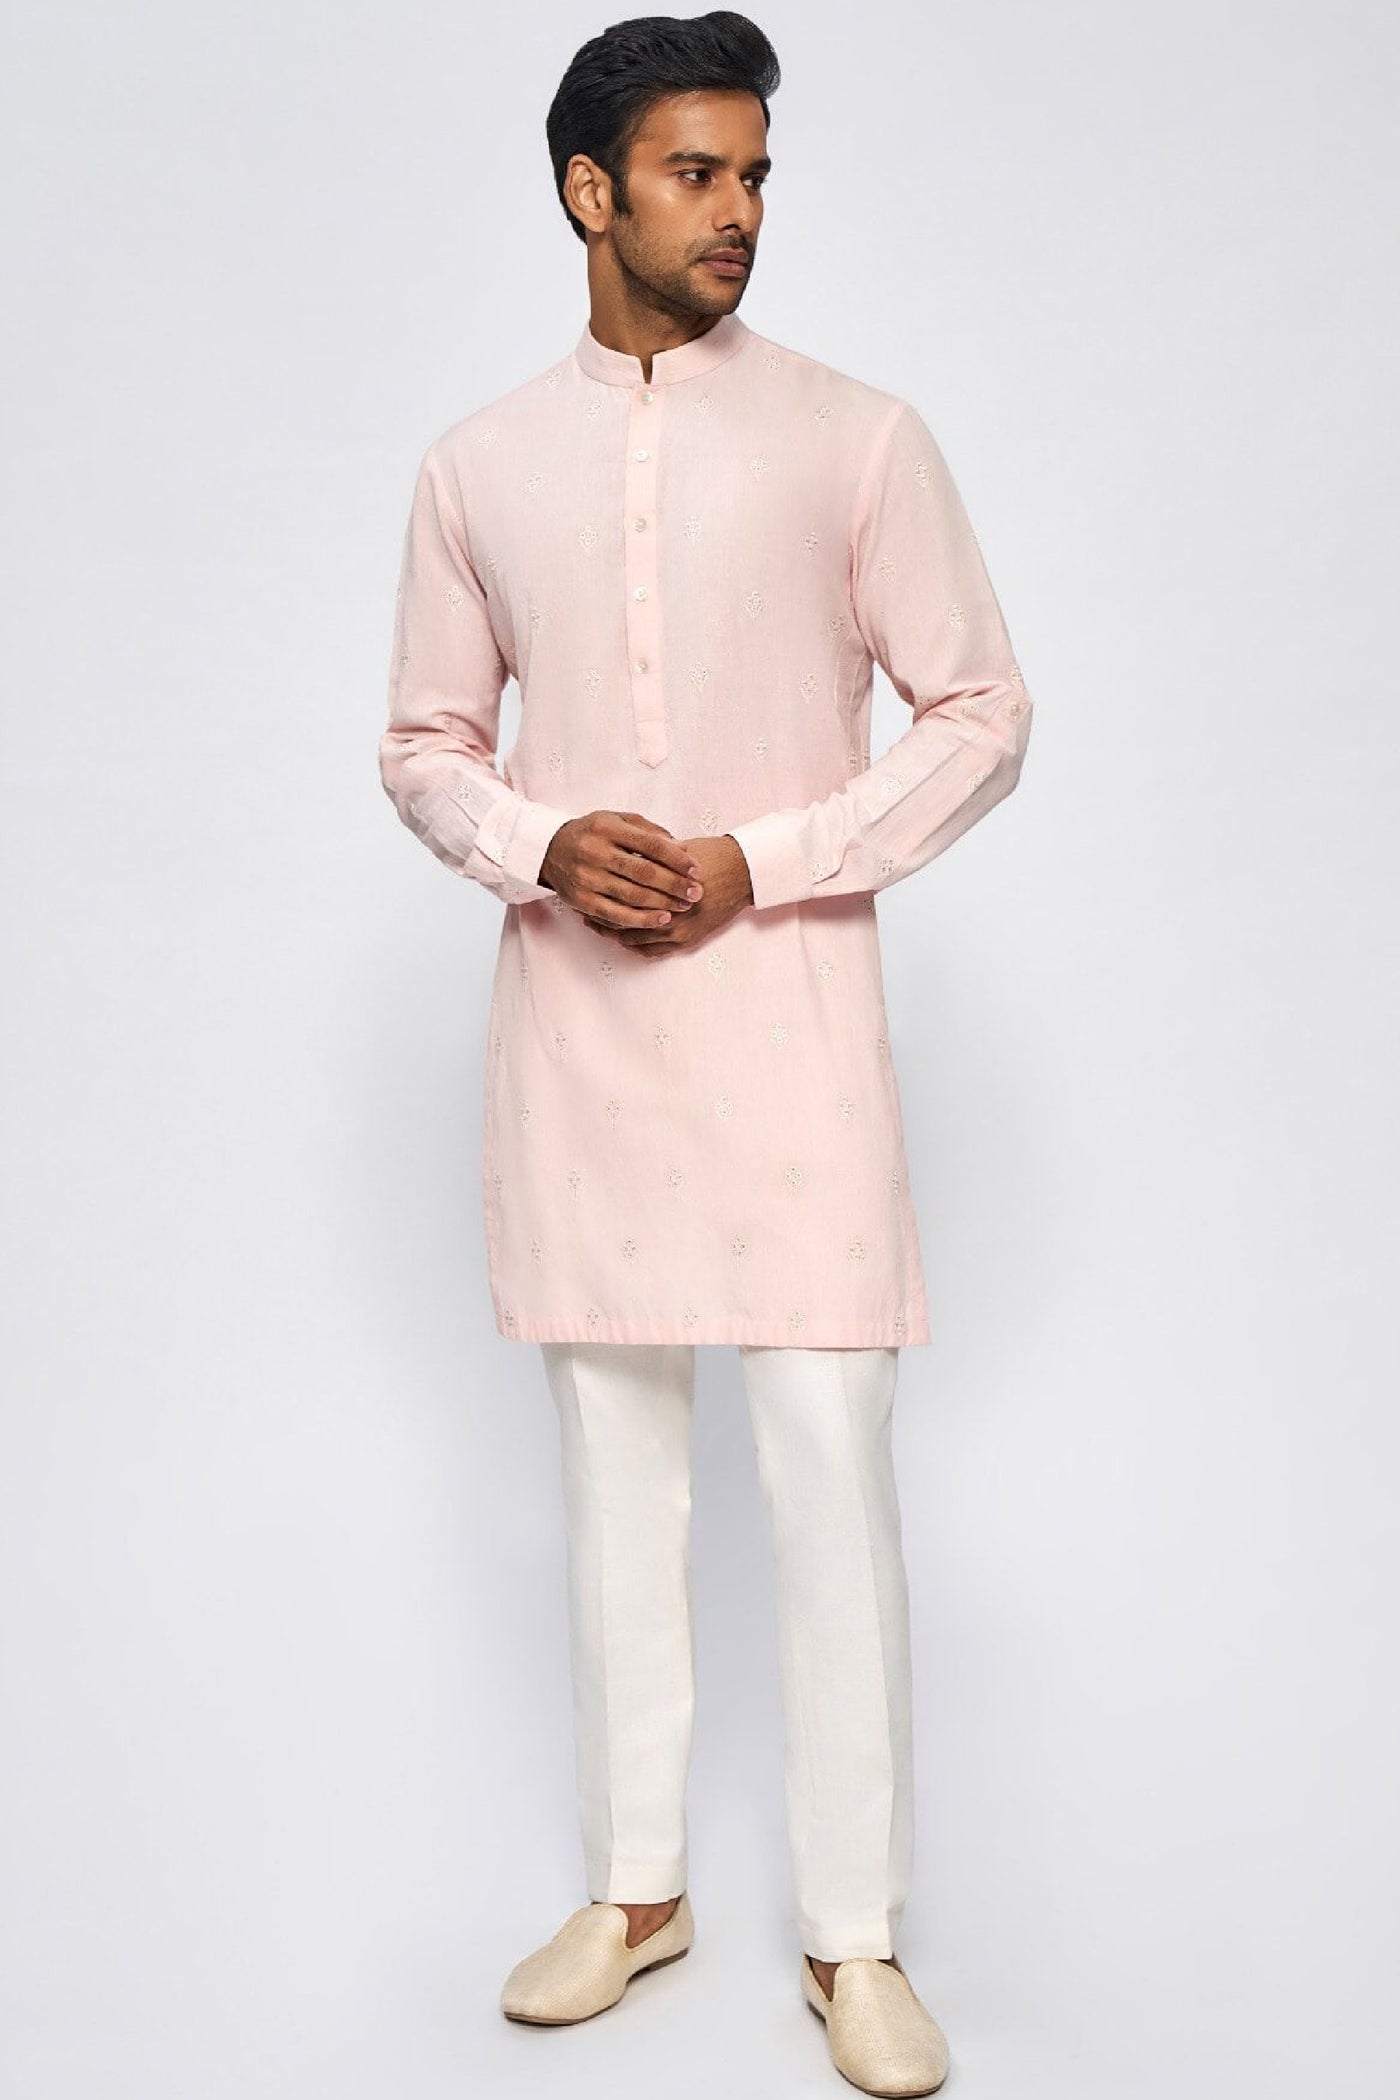 Anita Dongre Menswear Aaditva Kurta Pink Indian designer wear online shopping melange singapore